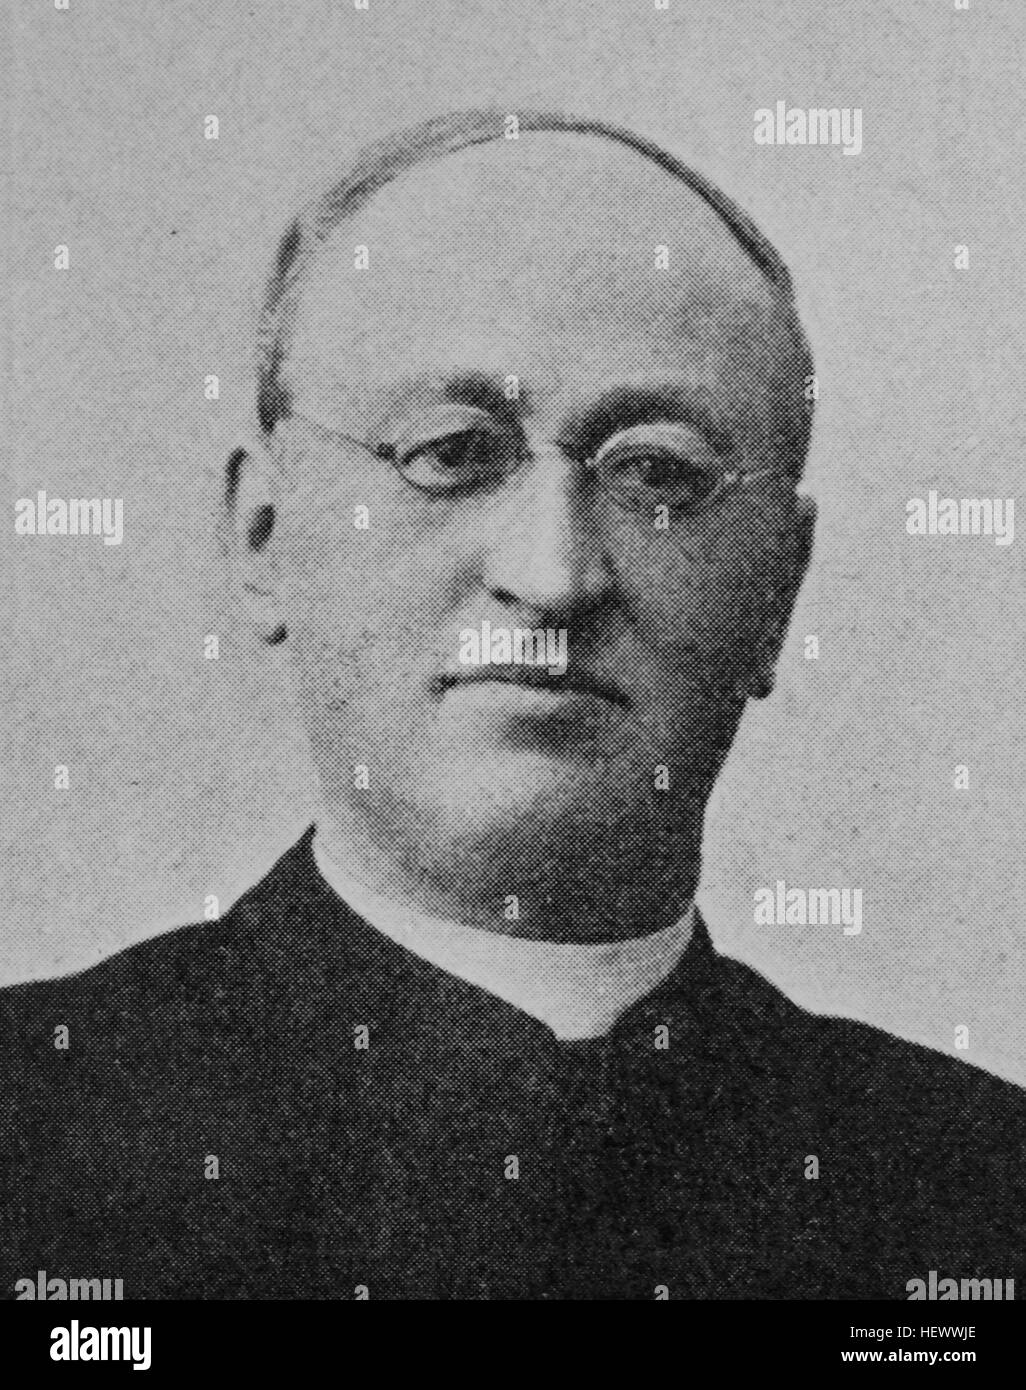 Franz Hitze, 1851 - 1921, l'allemand katholischer Geistlicher, homme politique socialiste et du Parti du centre, photo de 1895, l'amélioration numérique Banque D'Images